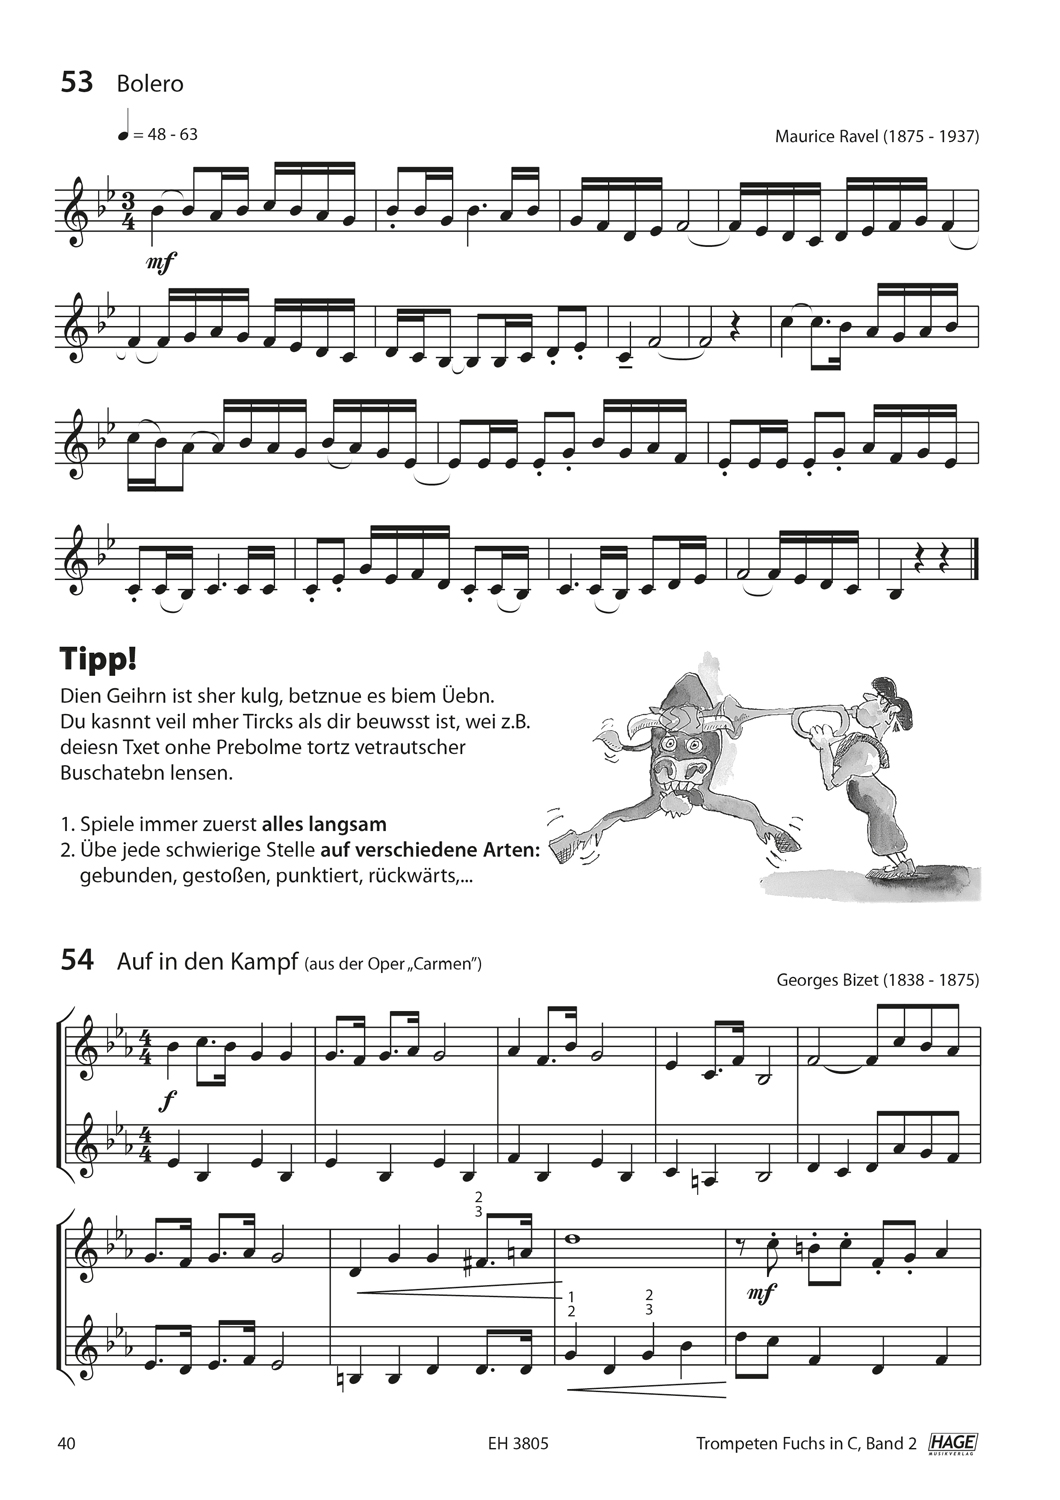 Trompeten Fuchs Band 2 in C für Posaunenchor (mit CD) Seiten 6